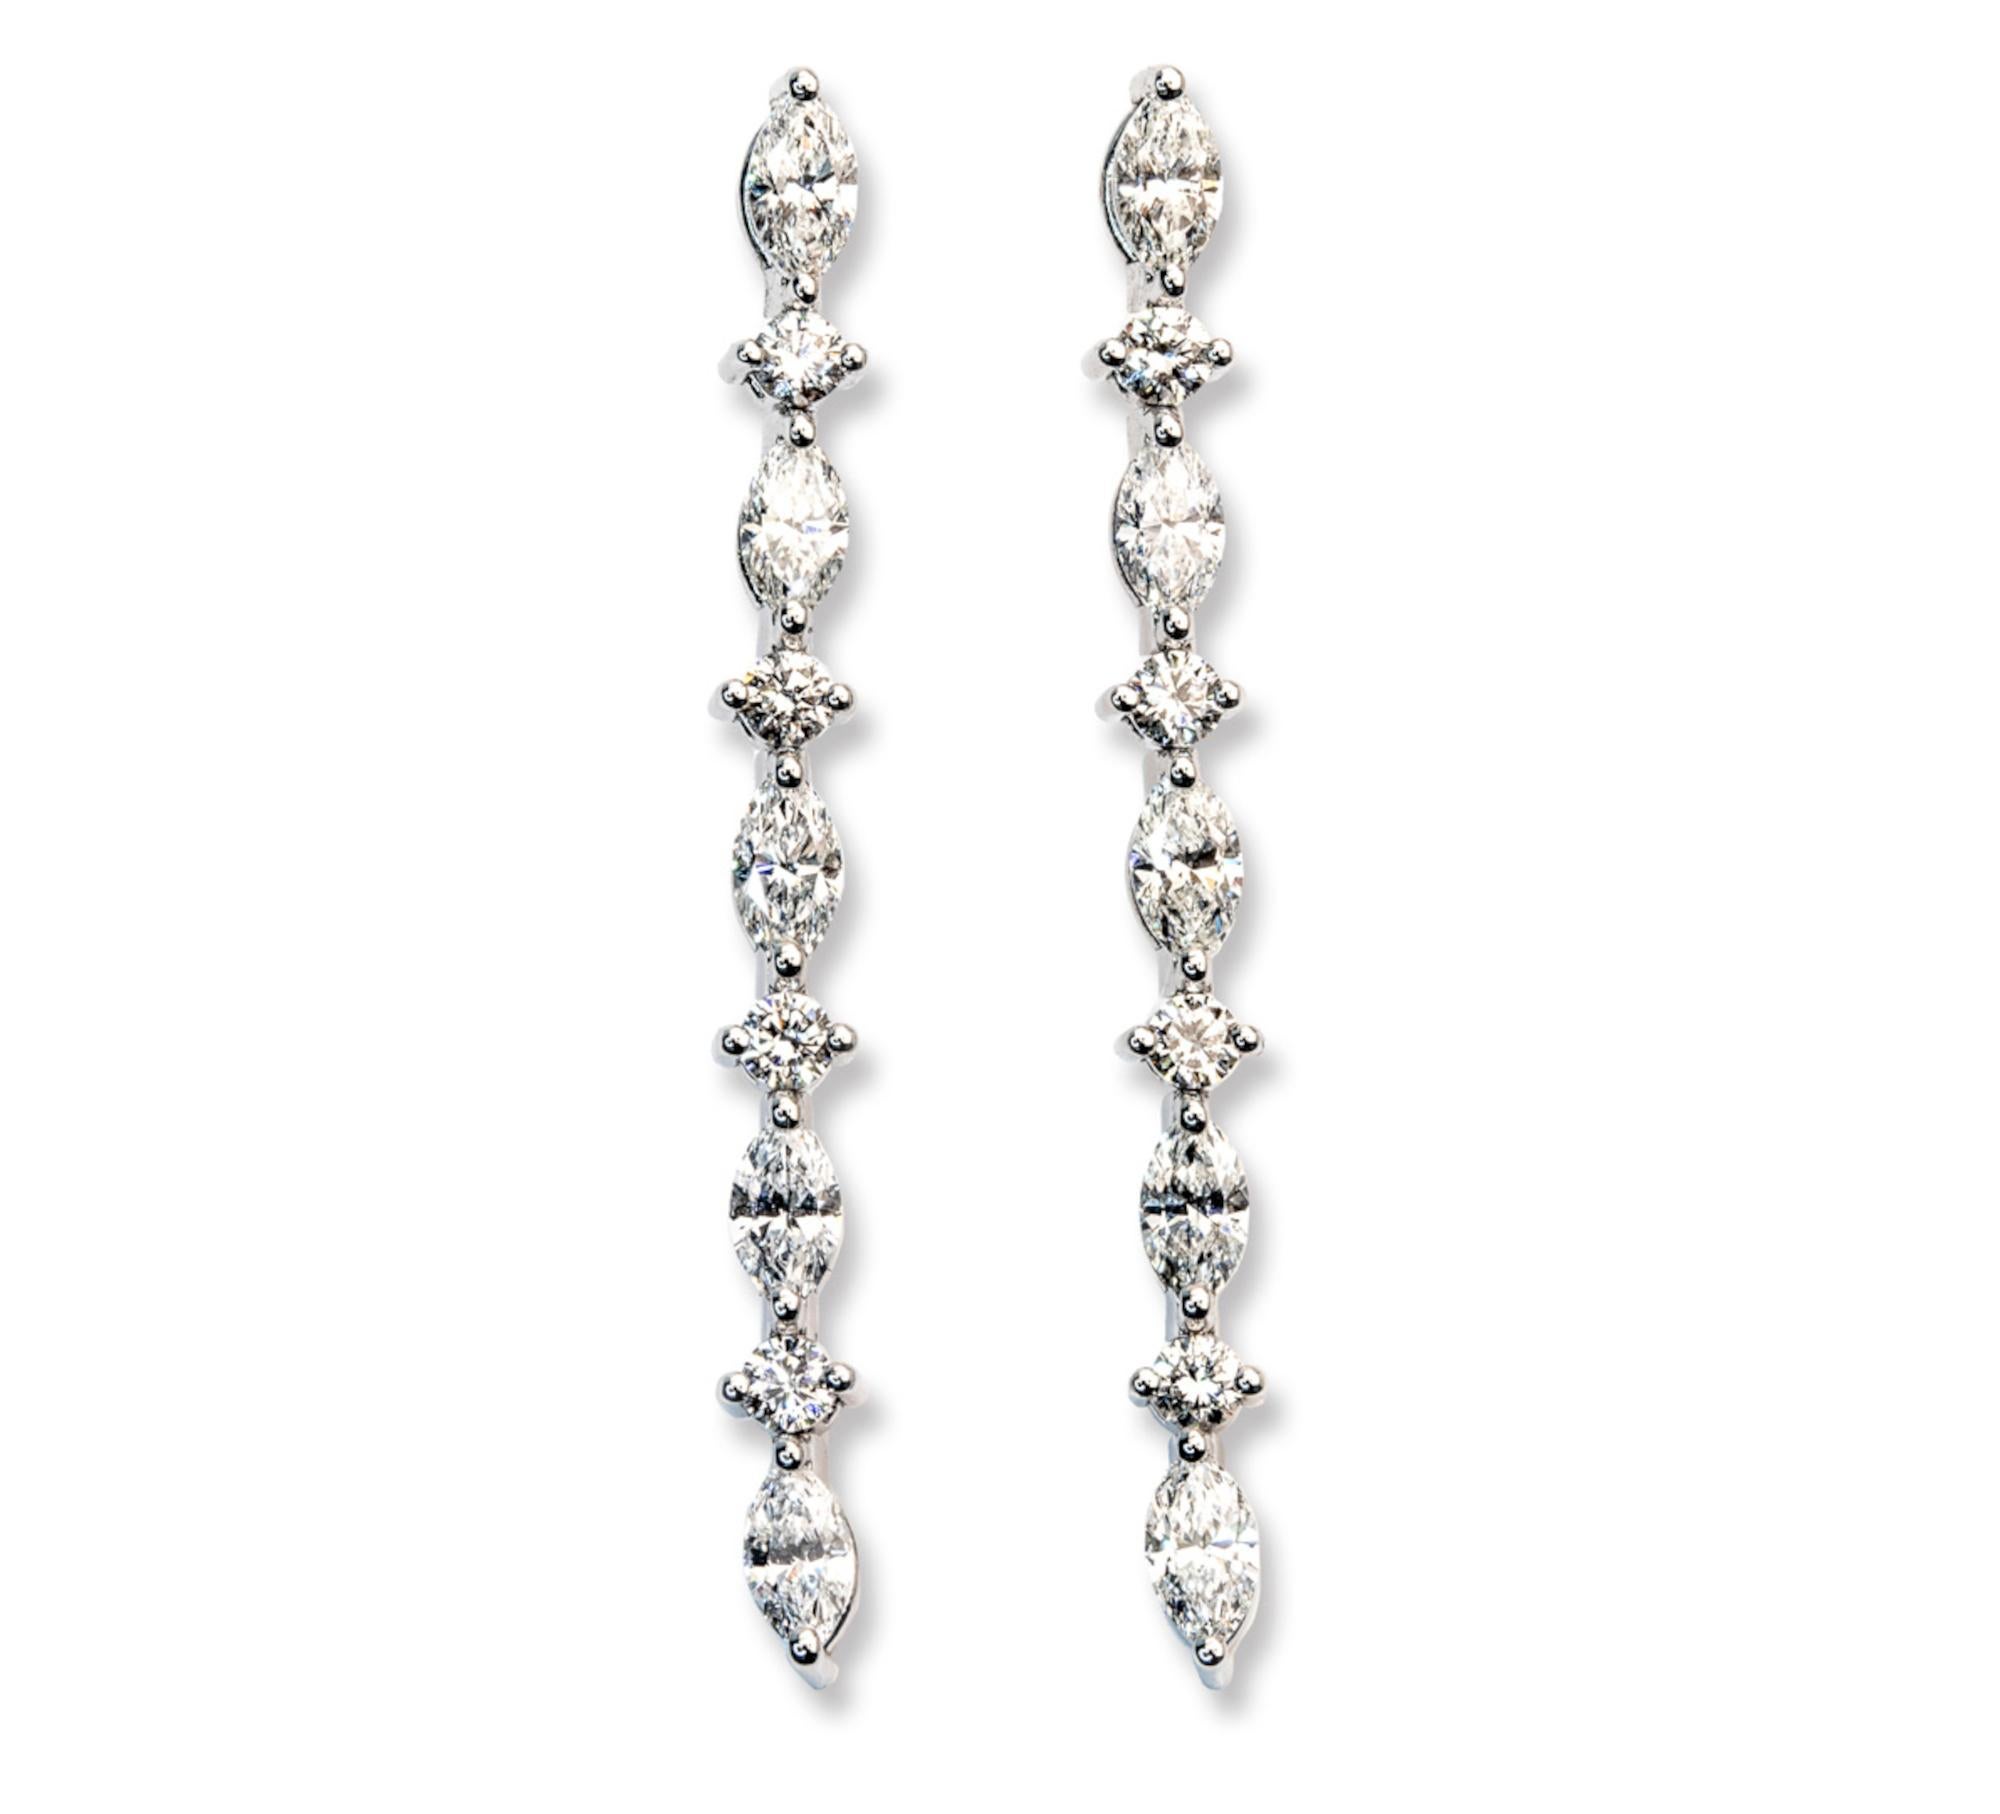 Der Inbegriff von Raffinesse und Verführung - unsere 1,38 Karat E-F Color VS Round Cut Diamond Degradè Dangle Earrings. Diese exquisiten Ohrringe mit einem Gesamtgewicht von 5,20 Gramm aus luxuriösem 18-karätigem Weißgold sind ein Fest der Eleganz